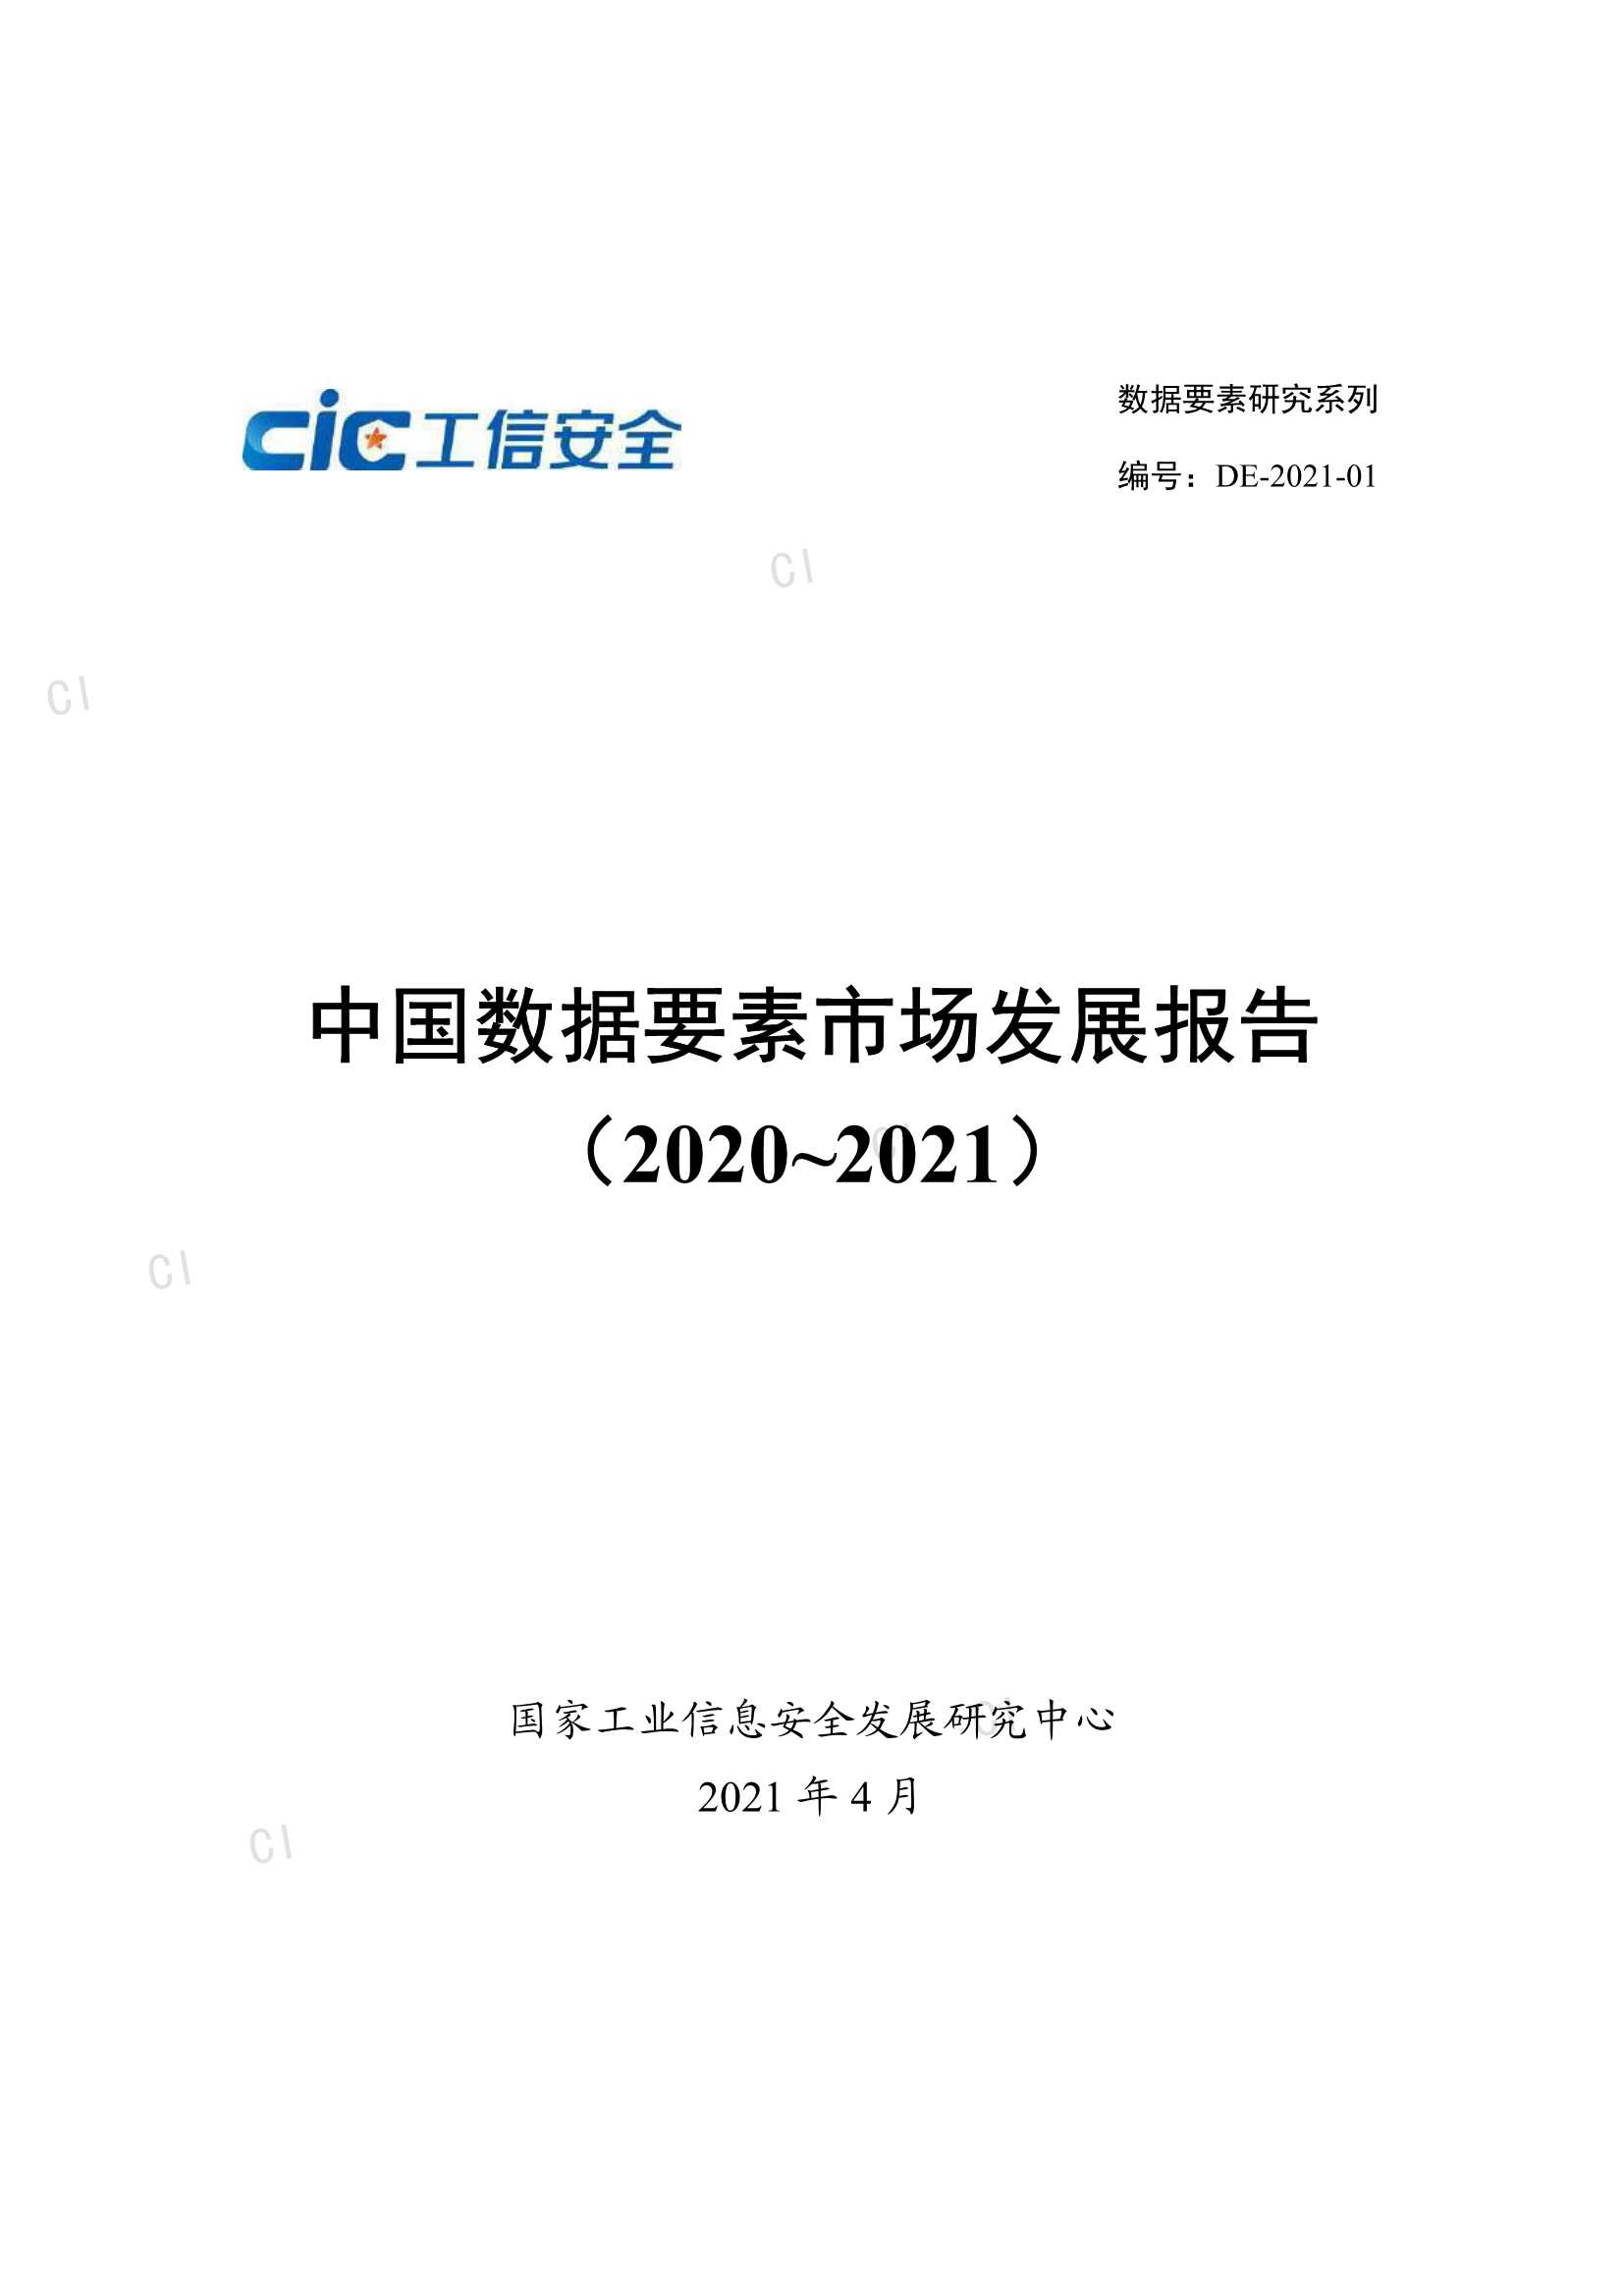 工信安全-中国数据要素市场发展报告（2020-2021）-2021.04-65页